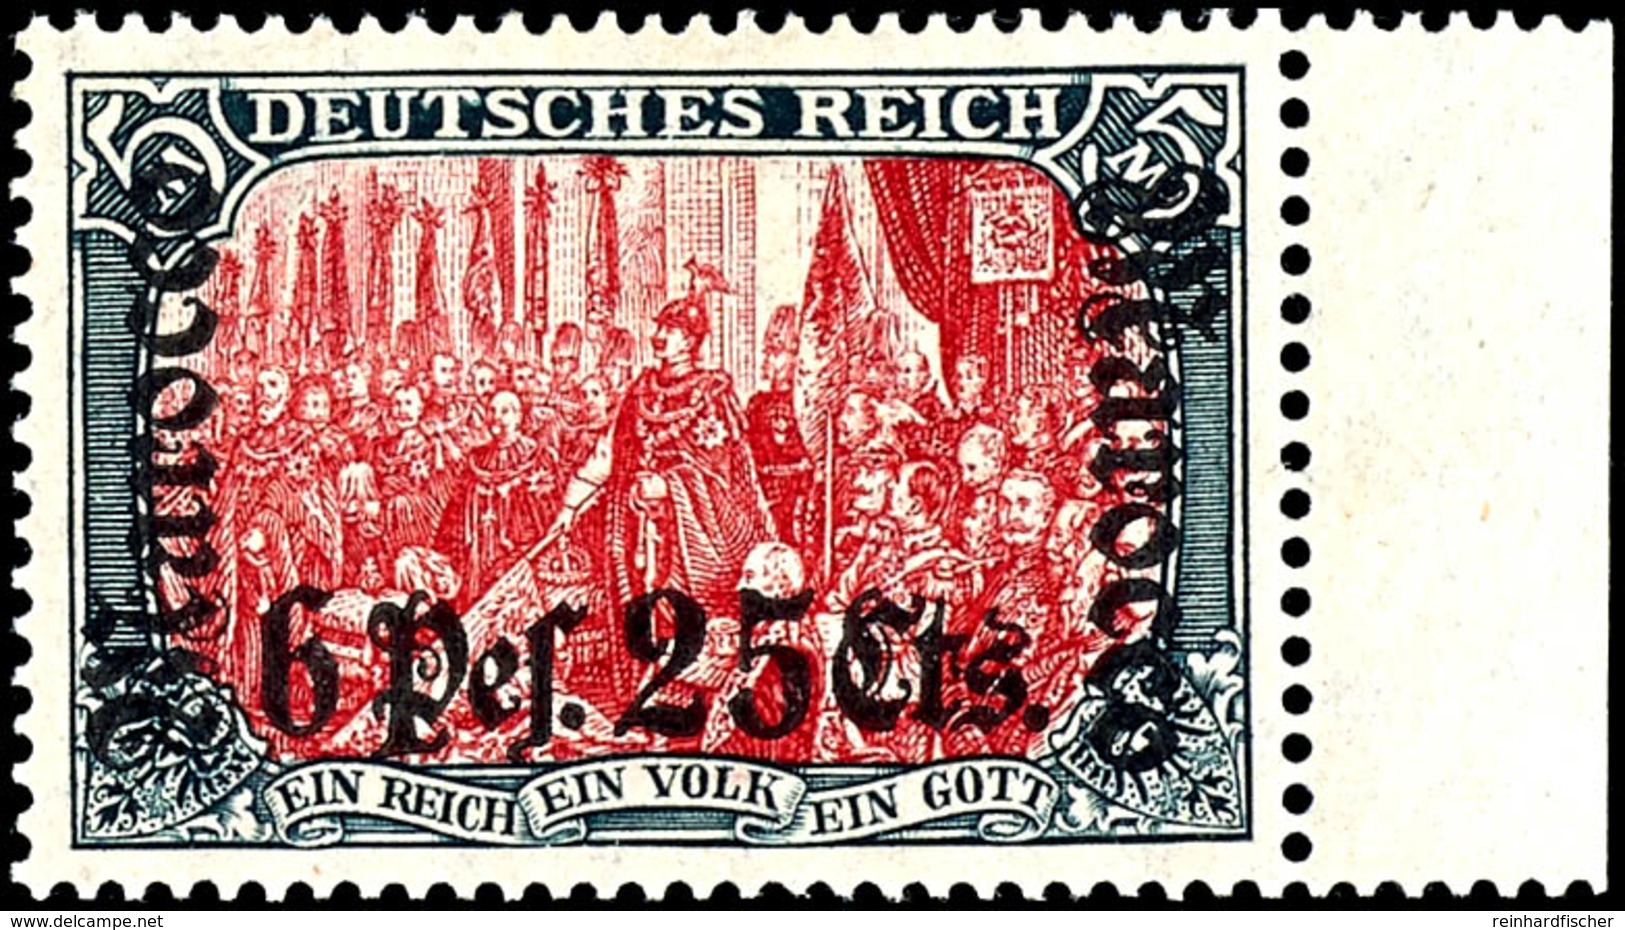 5 Mark Deutsches Reich Mit Aufdruck "Marocco 6 Pes. 25 Cts.", Postfrisches Luxusstück Vom Rechten Rand Auf Sieger- Abokä - Deutsche Post In Marokko